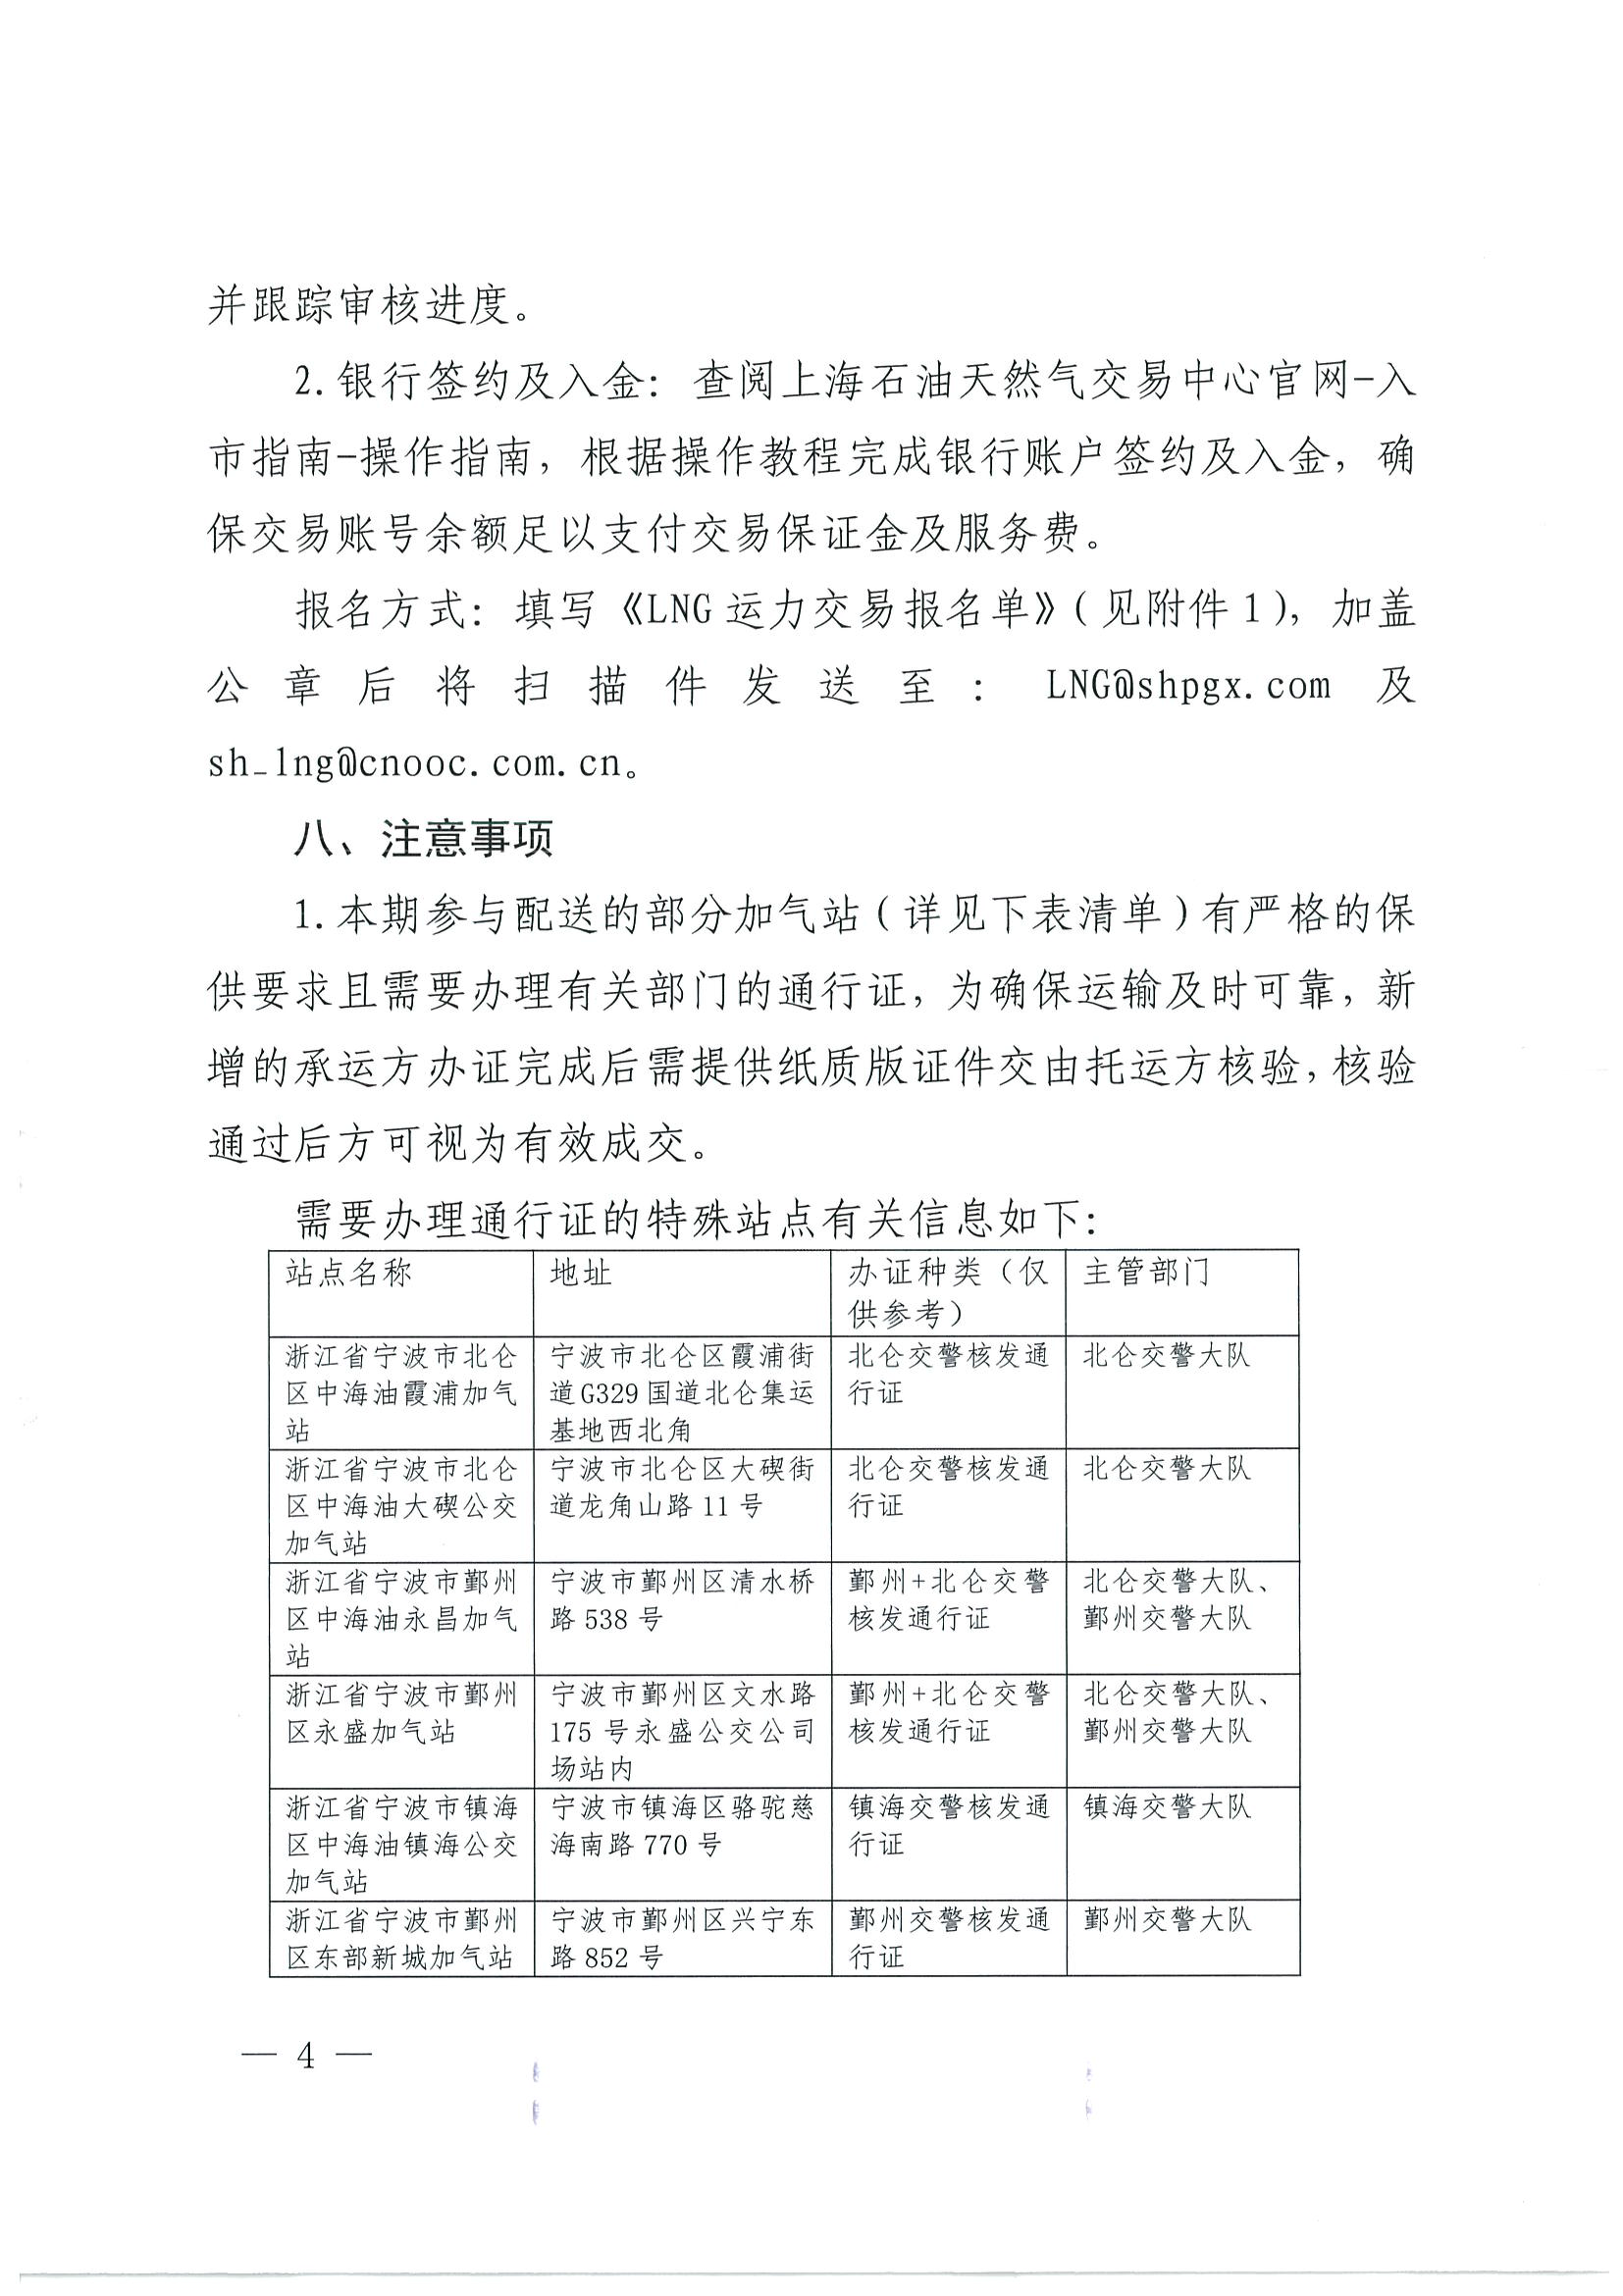 附件三：《中海石油气电集团浙江分公司关于开展运力竞价交易的公告》_页面_04.png